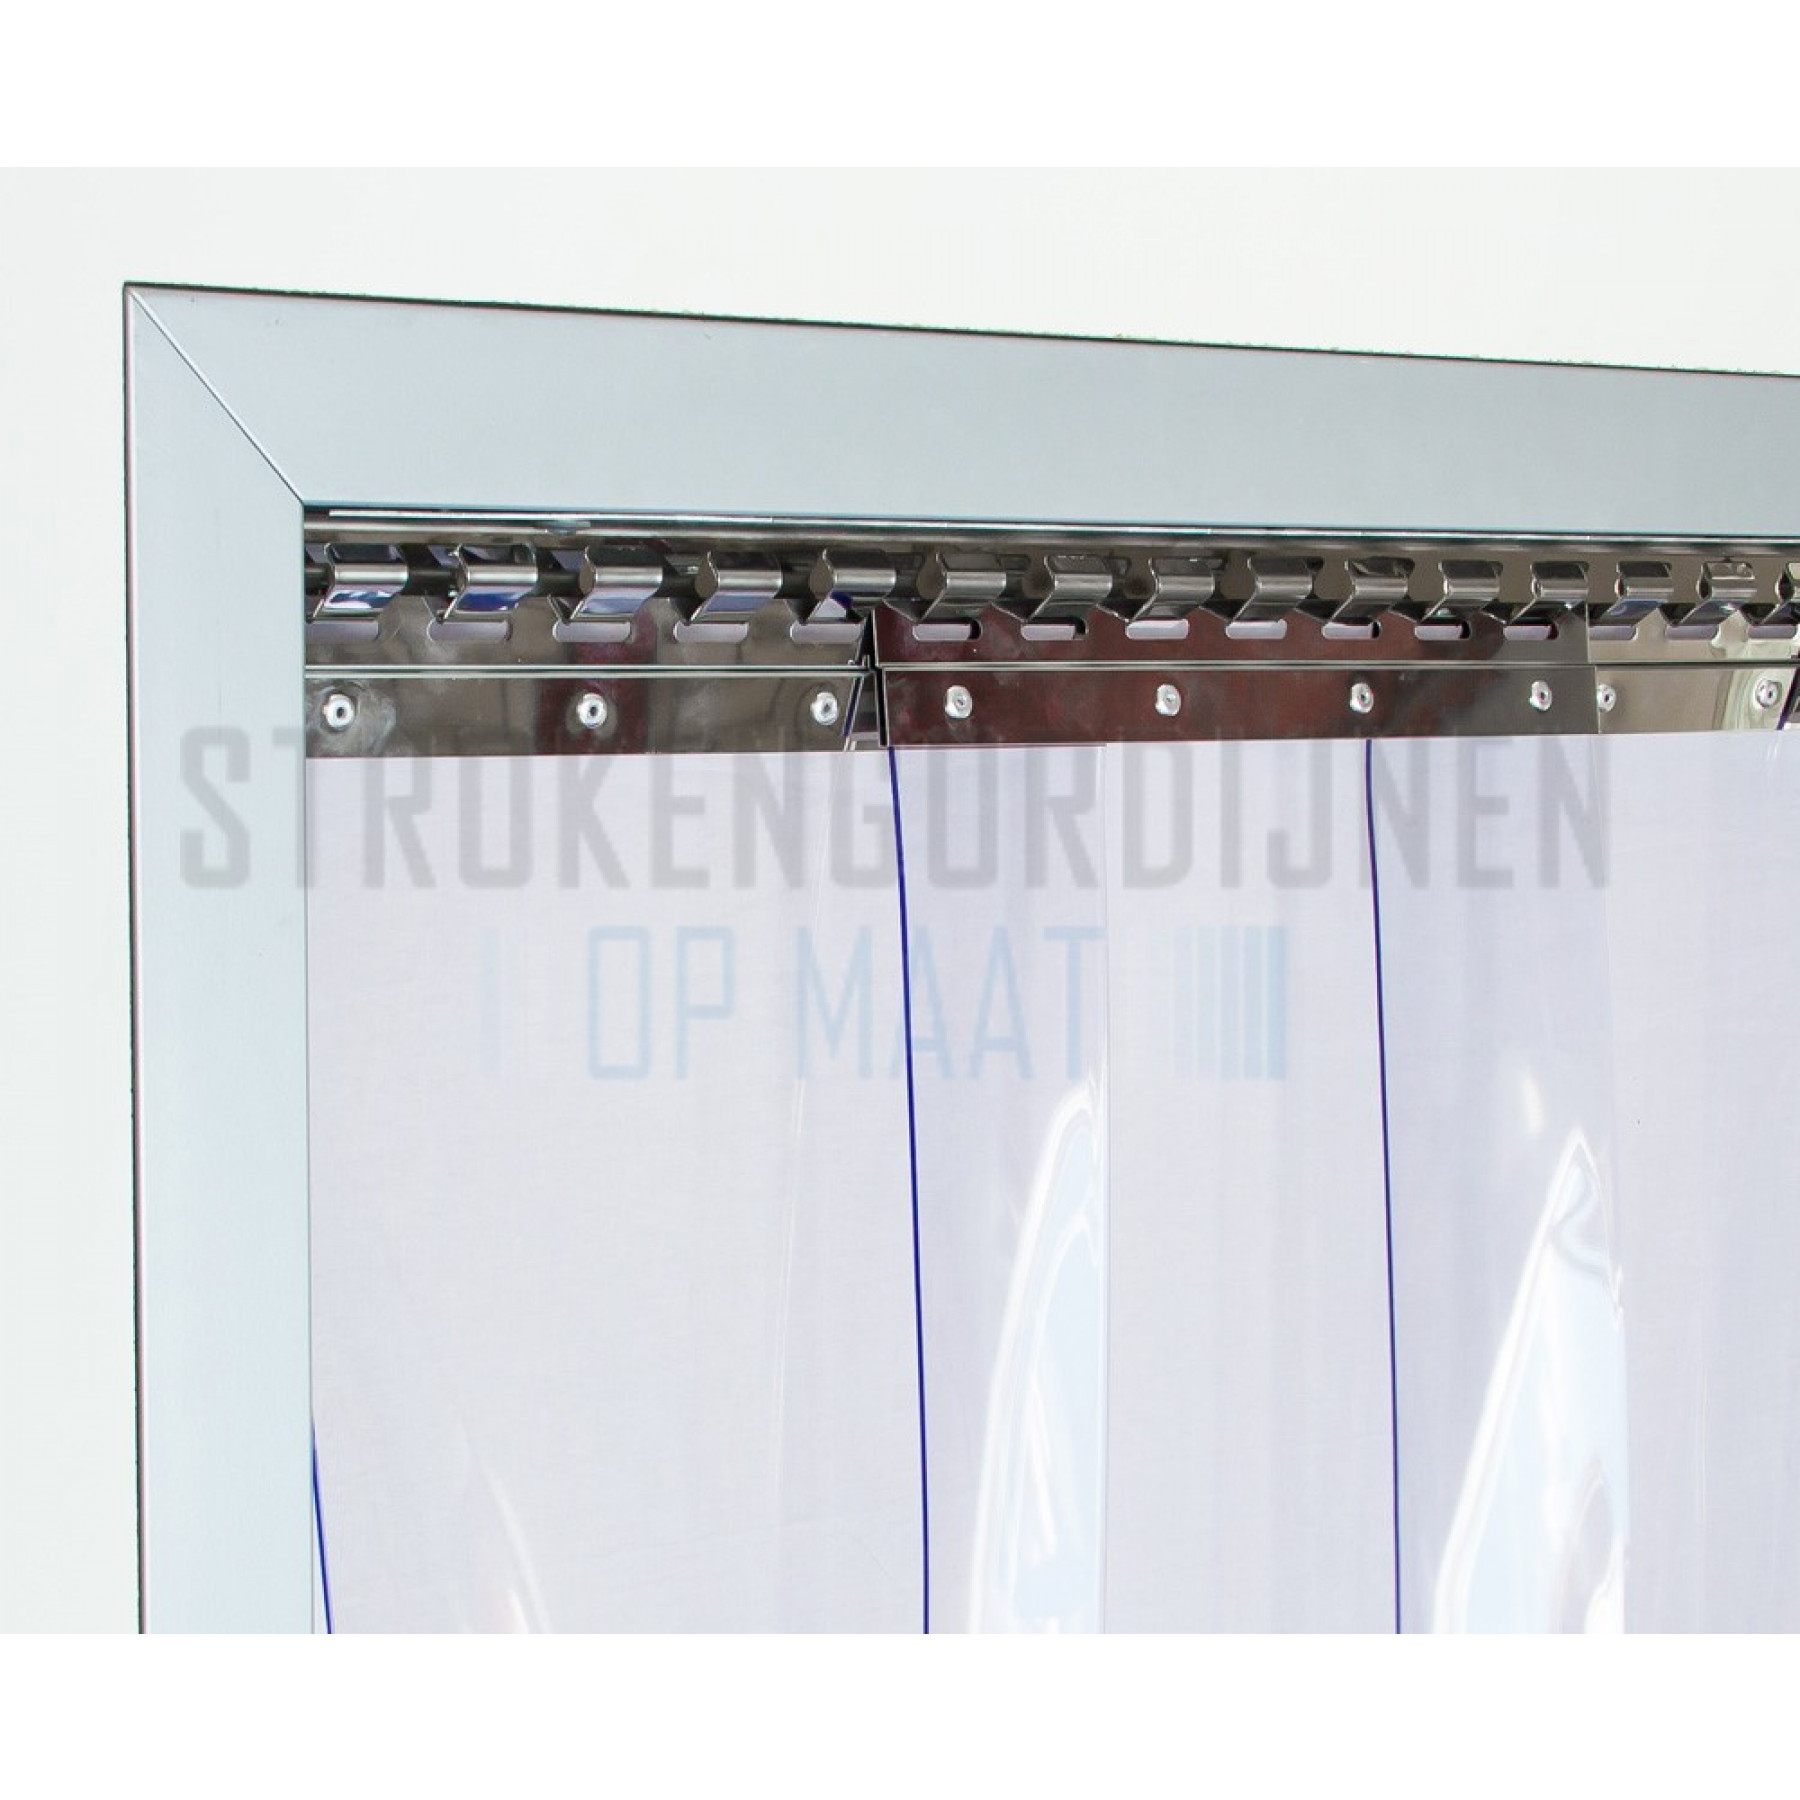 PVC Streifen zur Renovierung, 300mm breit, 3mm dick, Tiefkühlraum Qualität, transparent